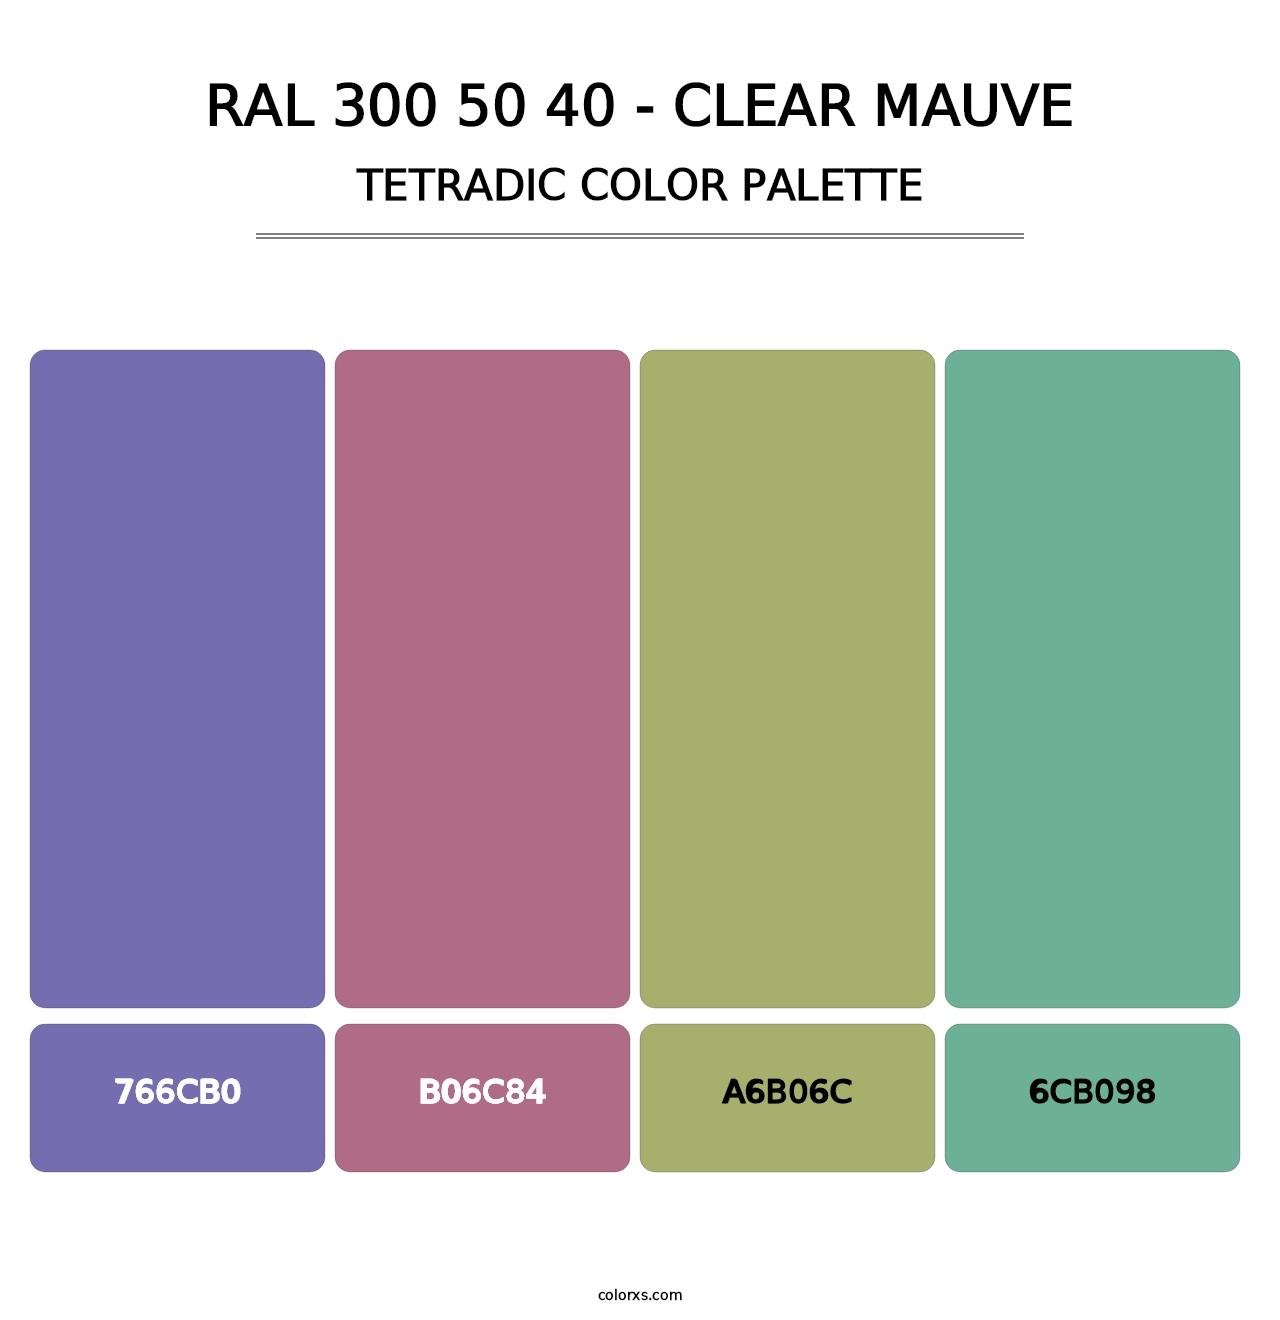 RAL 300 50 40 - Clear Mauve - Tetradic Color Palette